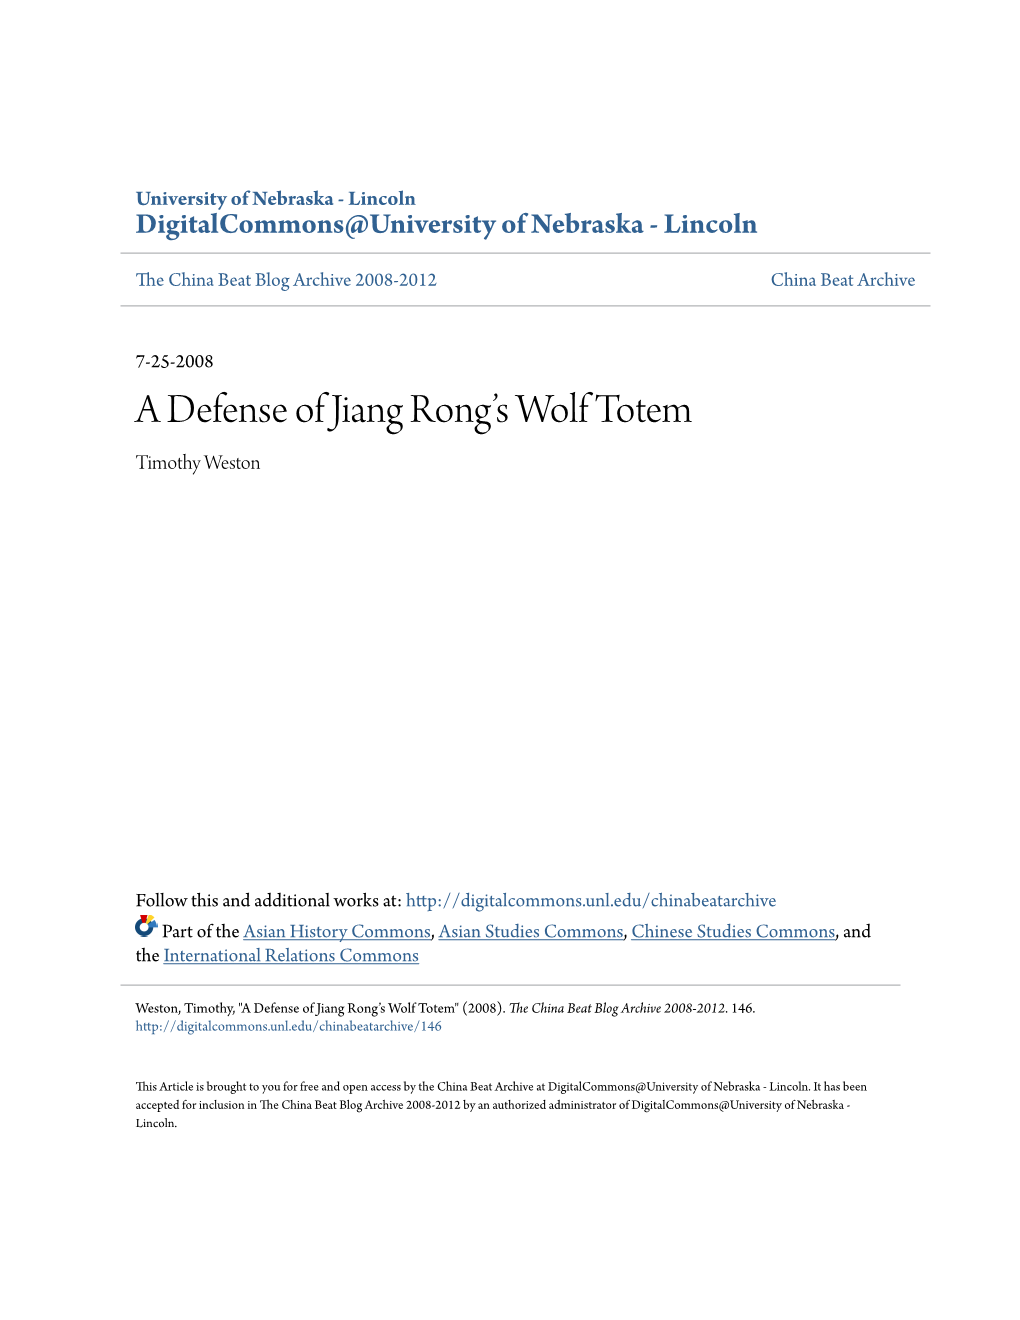 A Defense of Jiang Rong's Wolf Totem